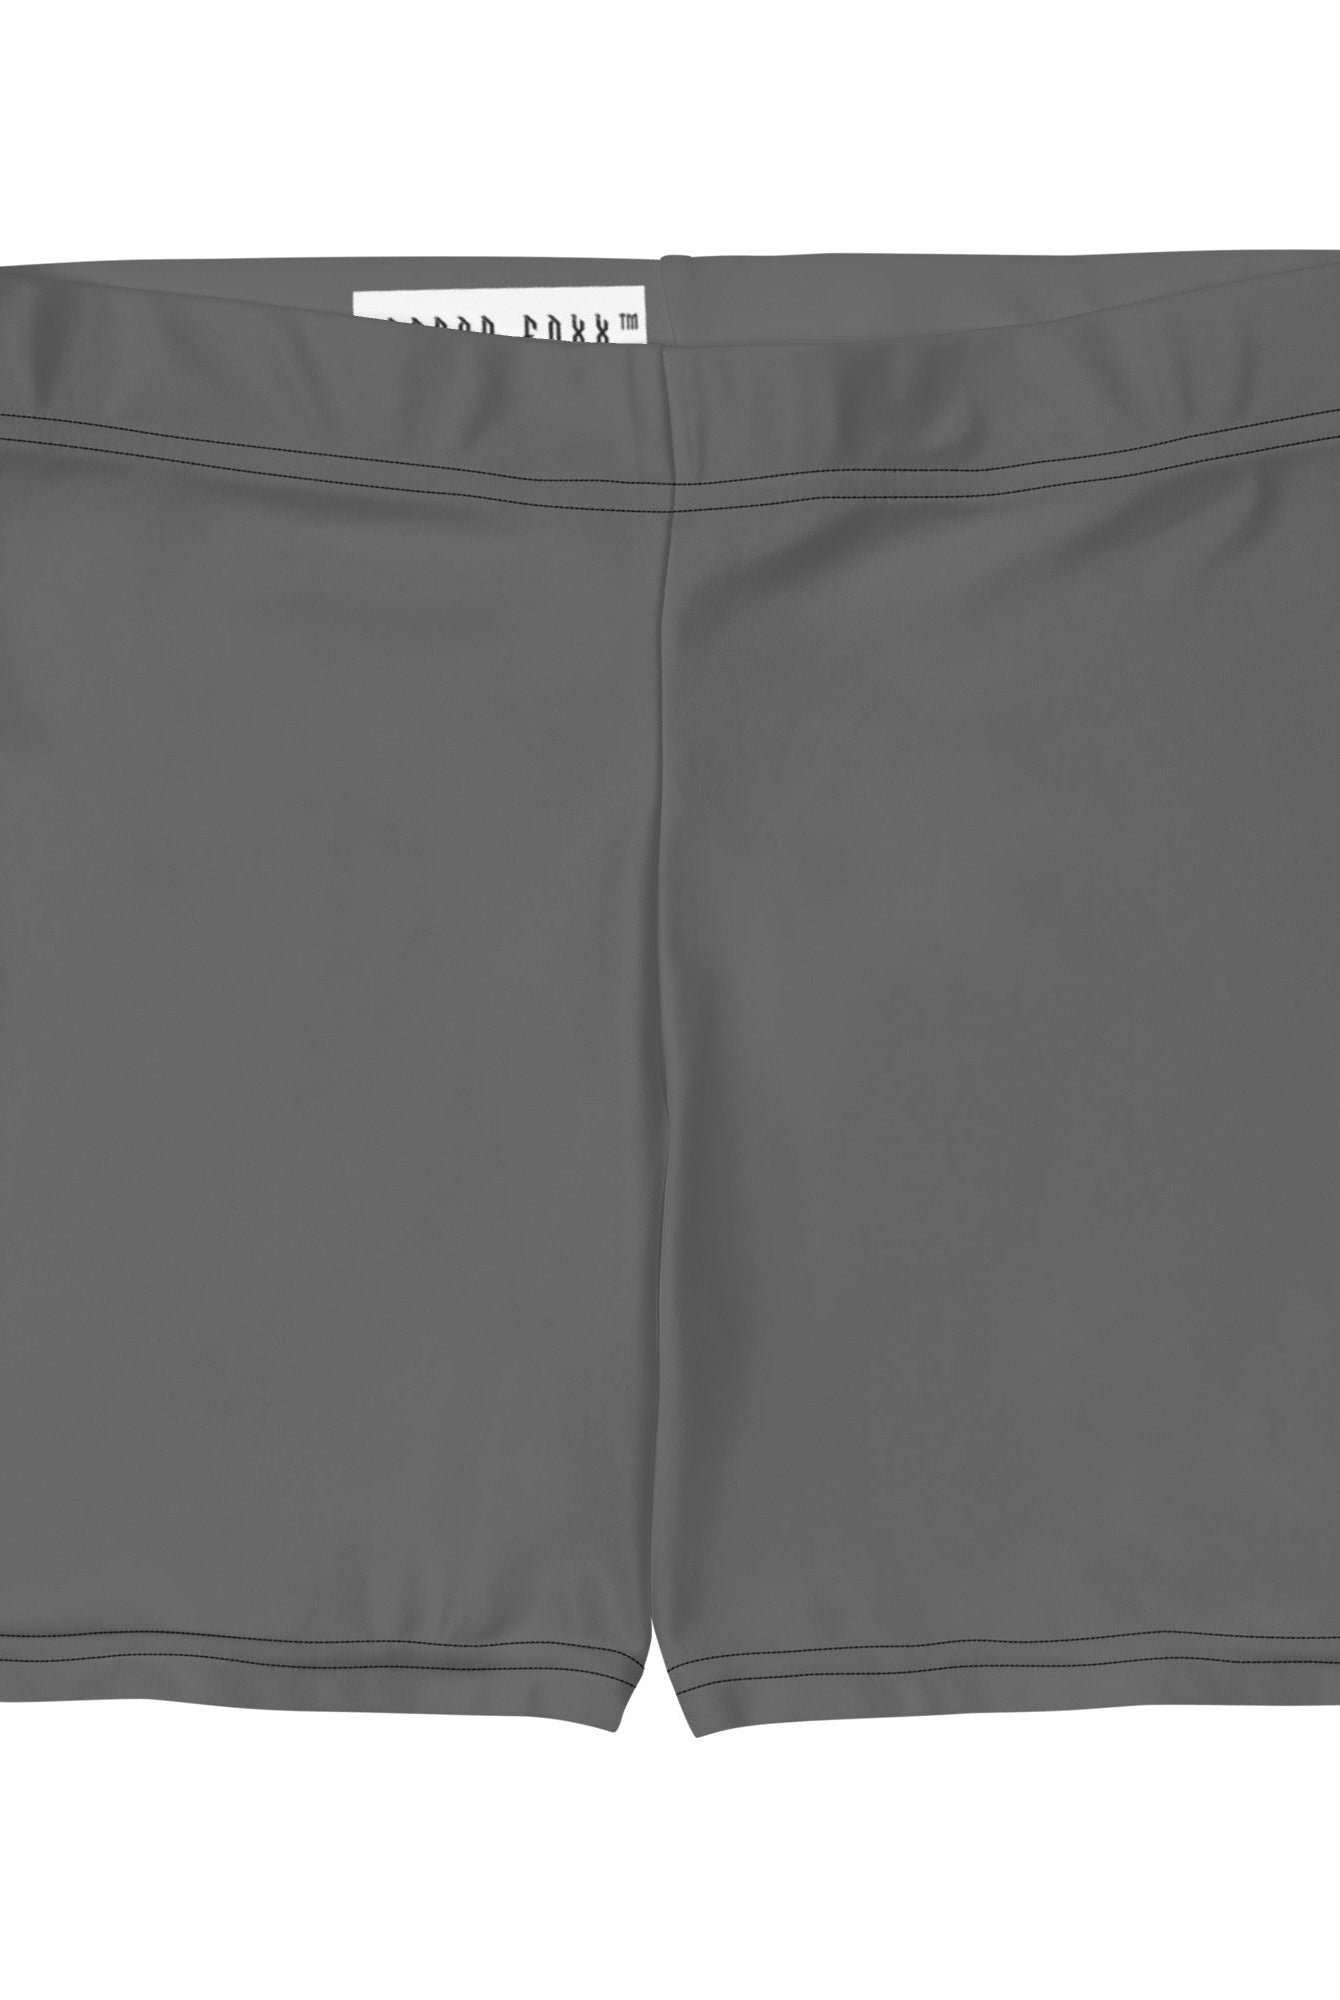 Grey Gym Shorts - Women's Gym Shorts - DRAGON FOXX™ - Grey Gym Shorts - 2040980_9296 - XS - - Dragon Foxx™ - Dragon Foxx™ Grey Gym Shorts - Dragon Foxx™ Gym Shorts